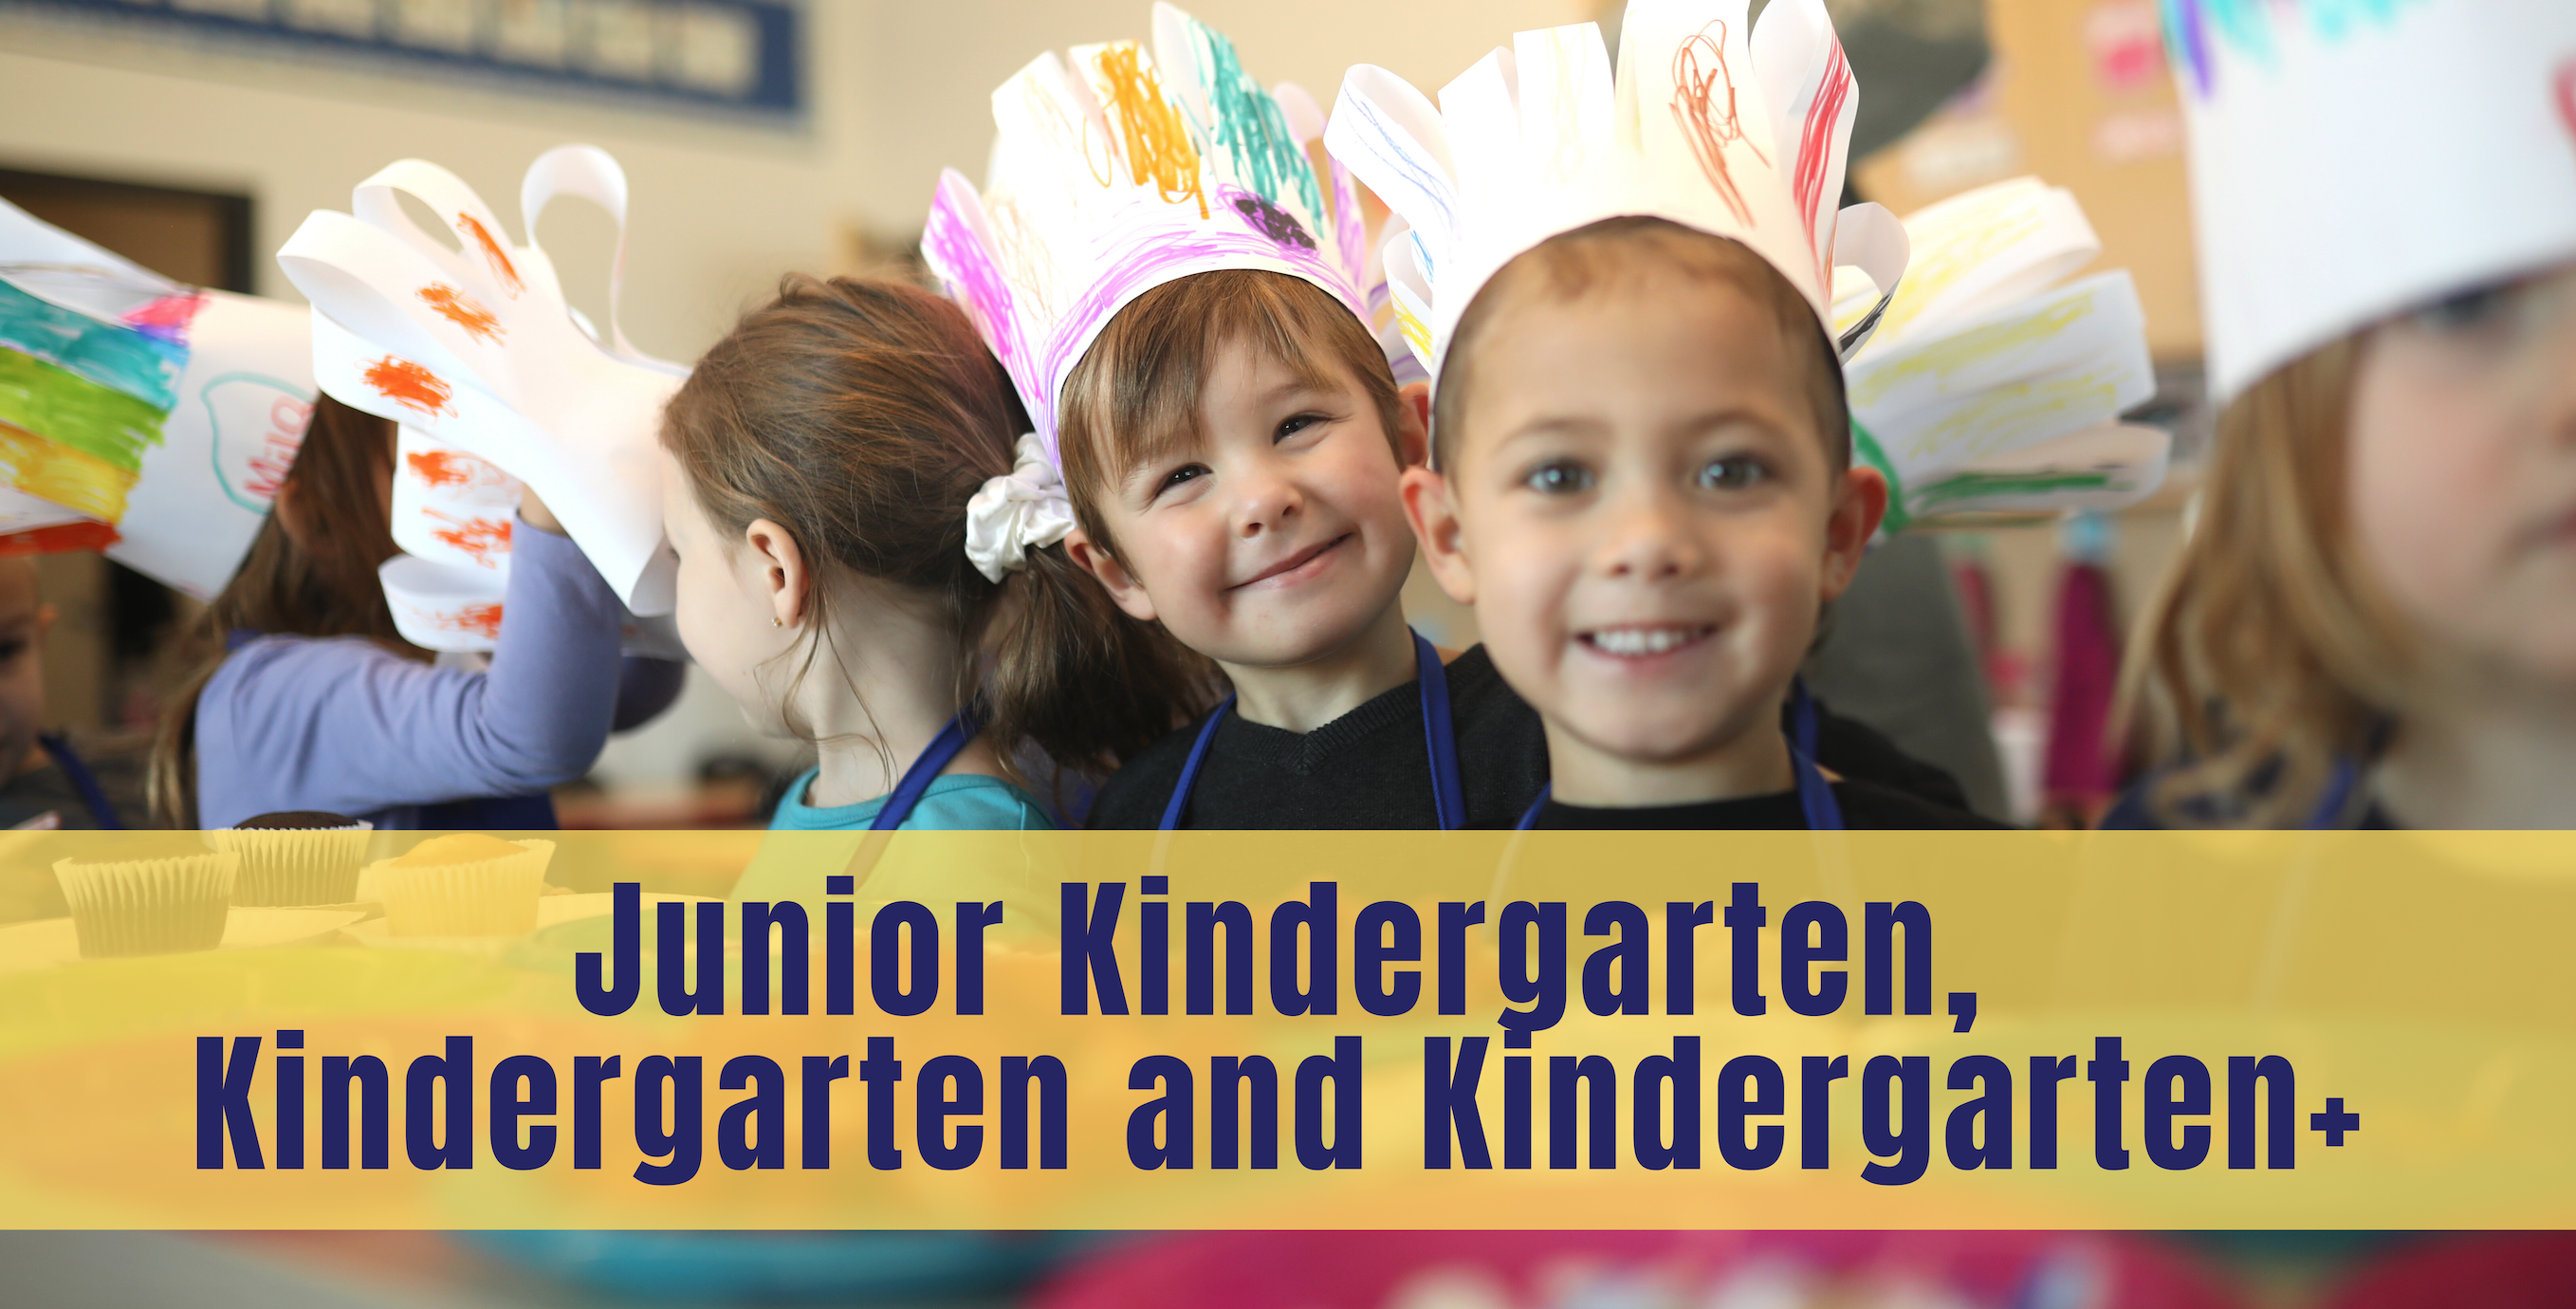 Junior K and Kindergarten